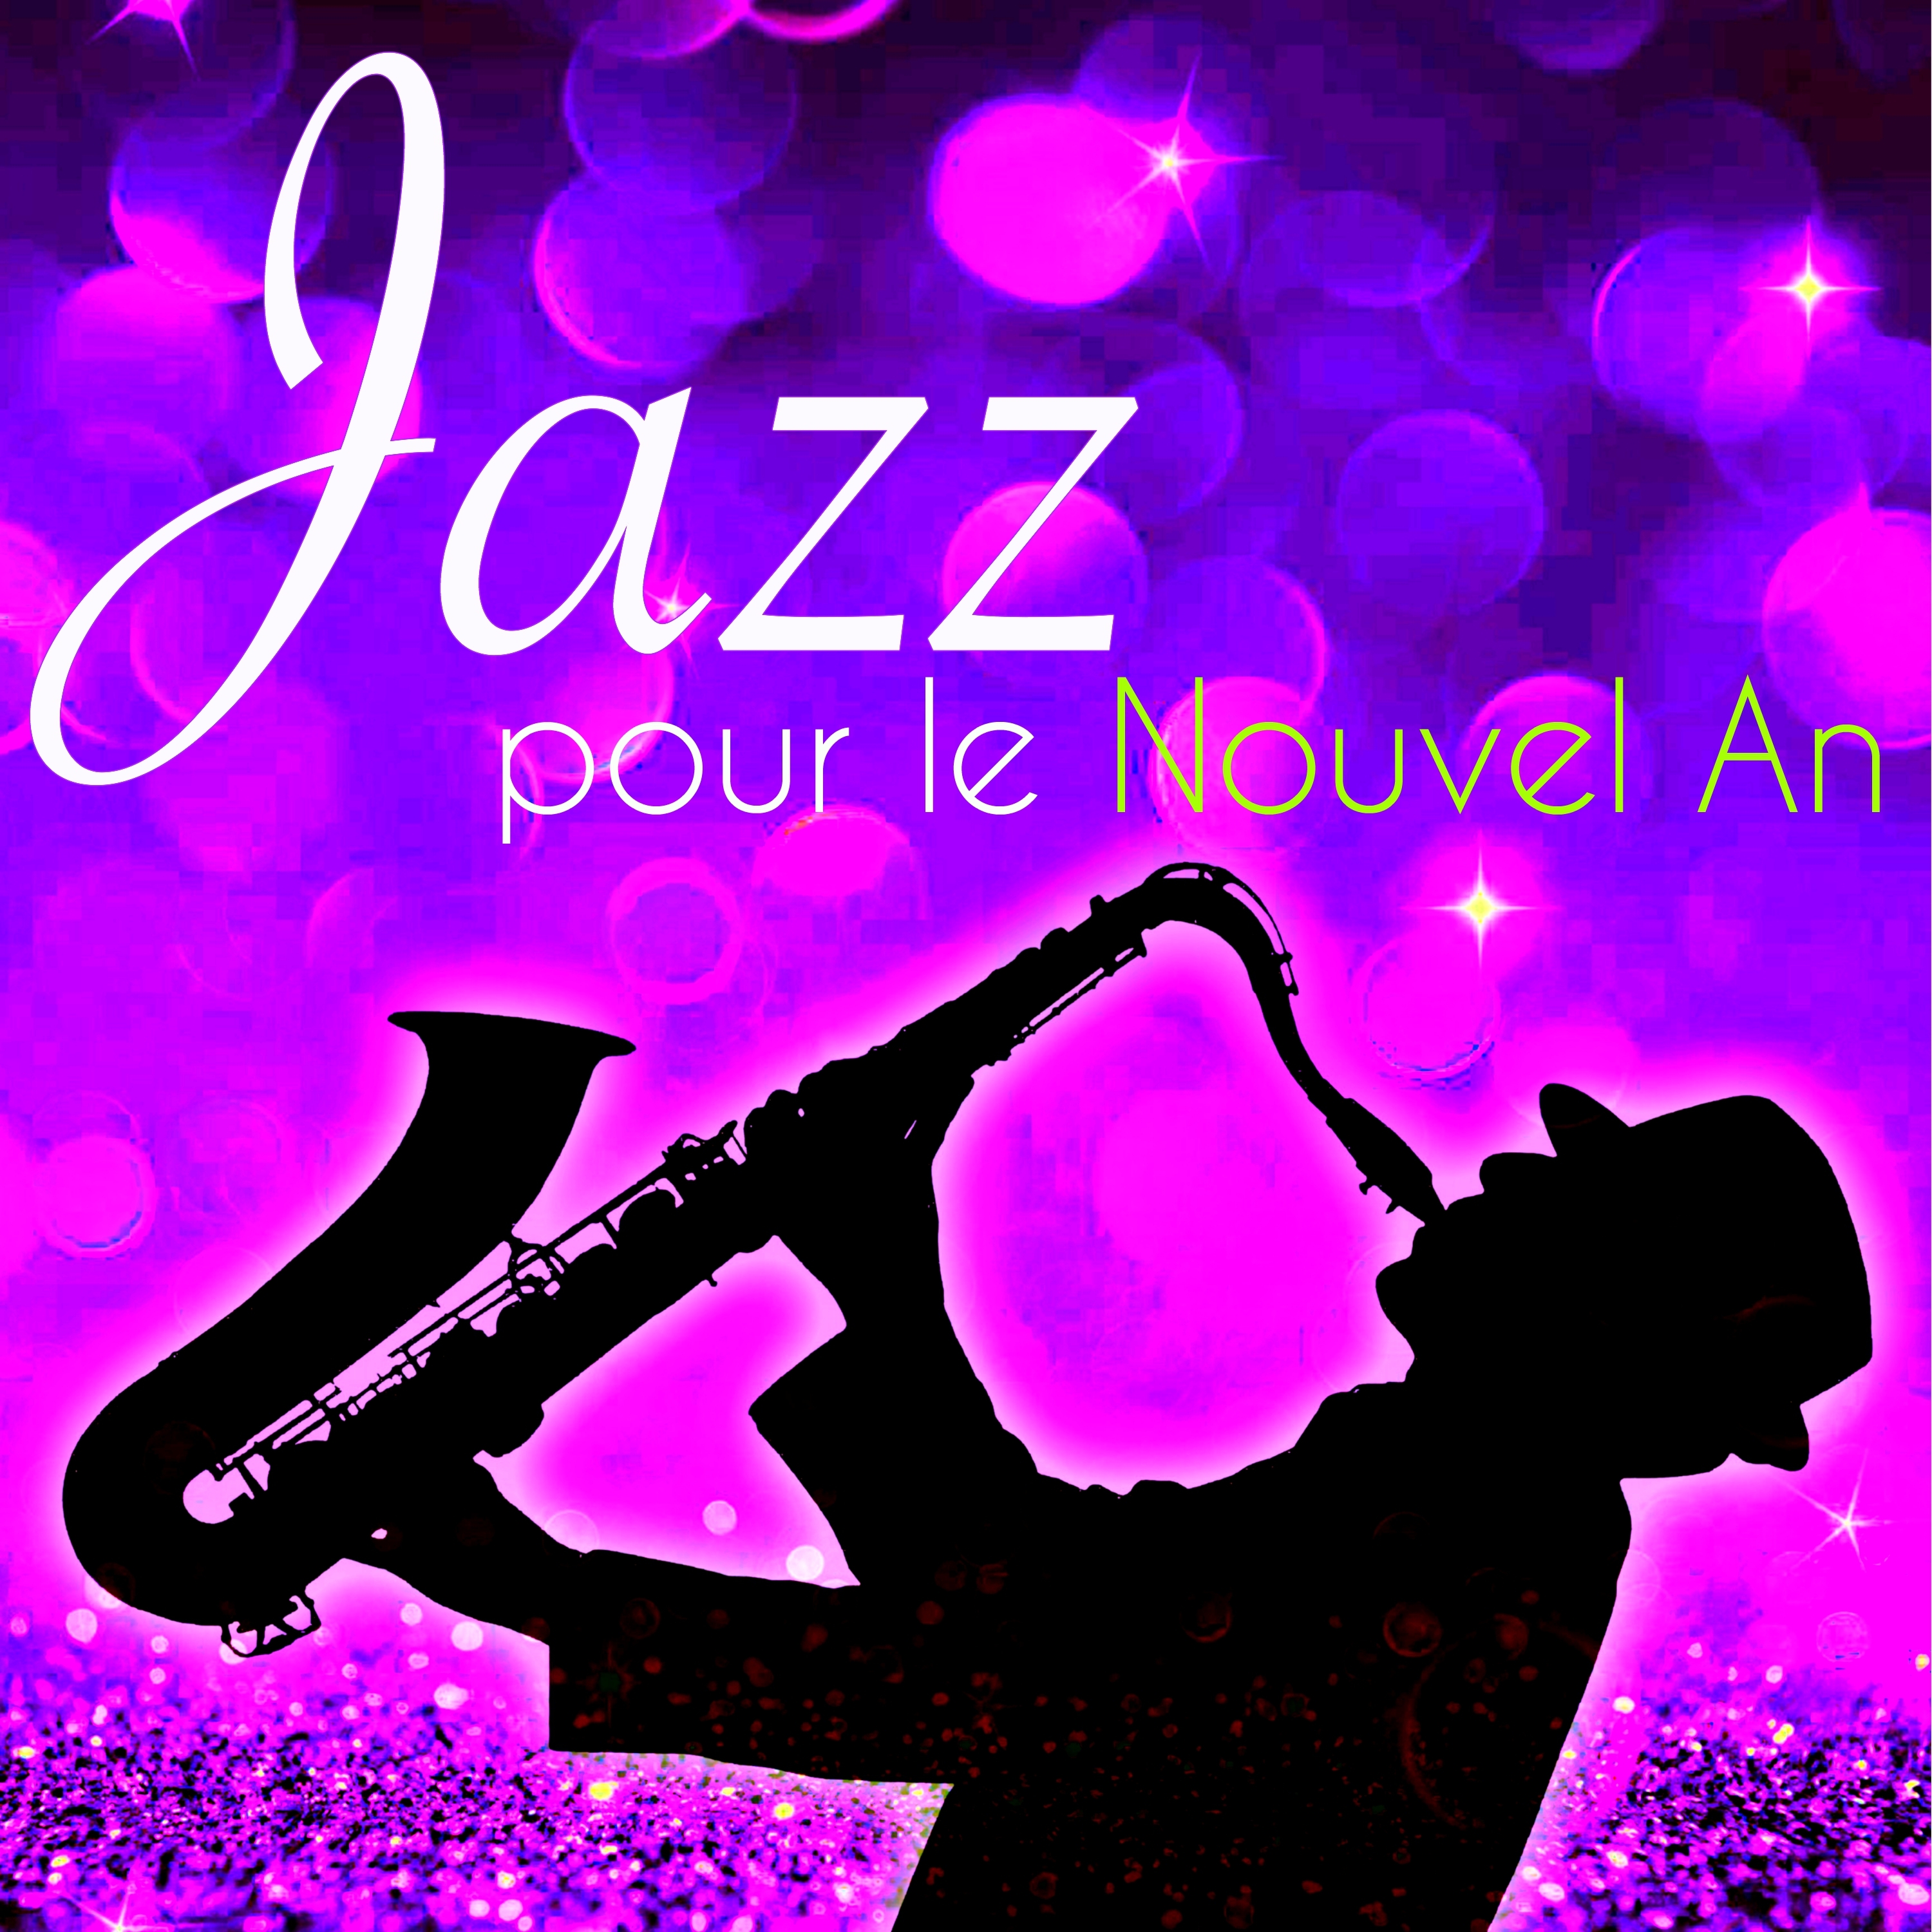 Jazz pour le Nouvel An  Bonne Anne e Jazz, musique jazz pour le re veillon du Nouvel An